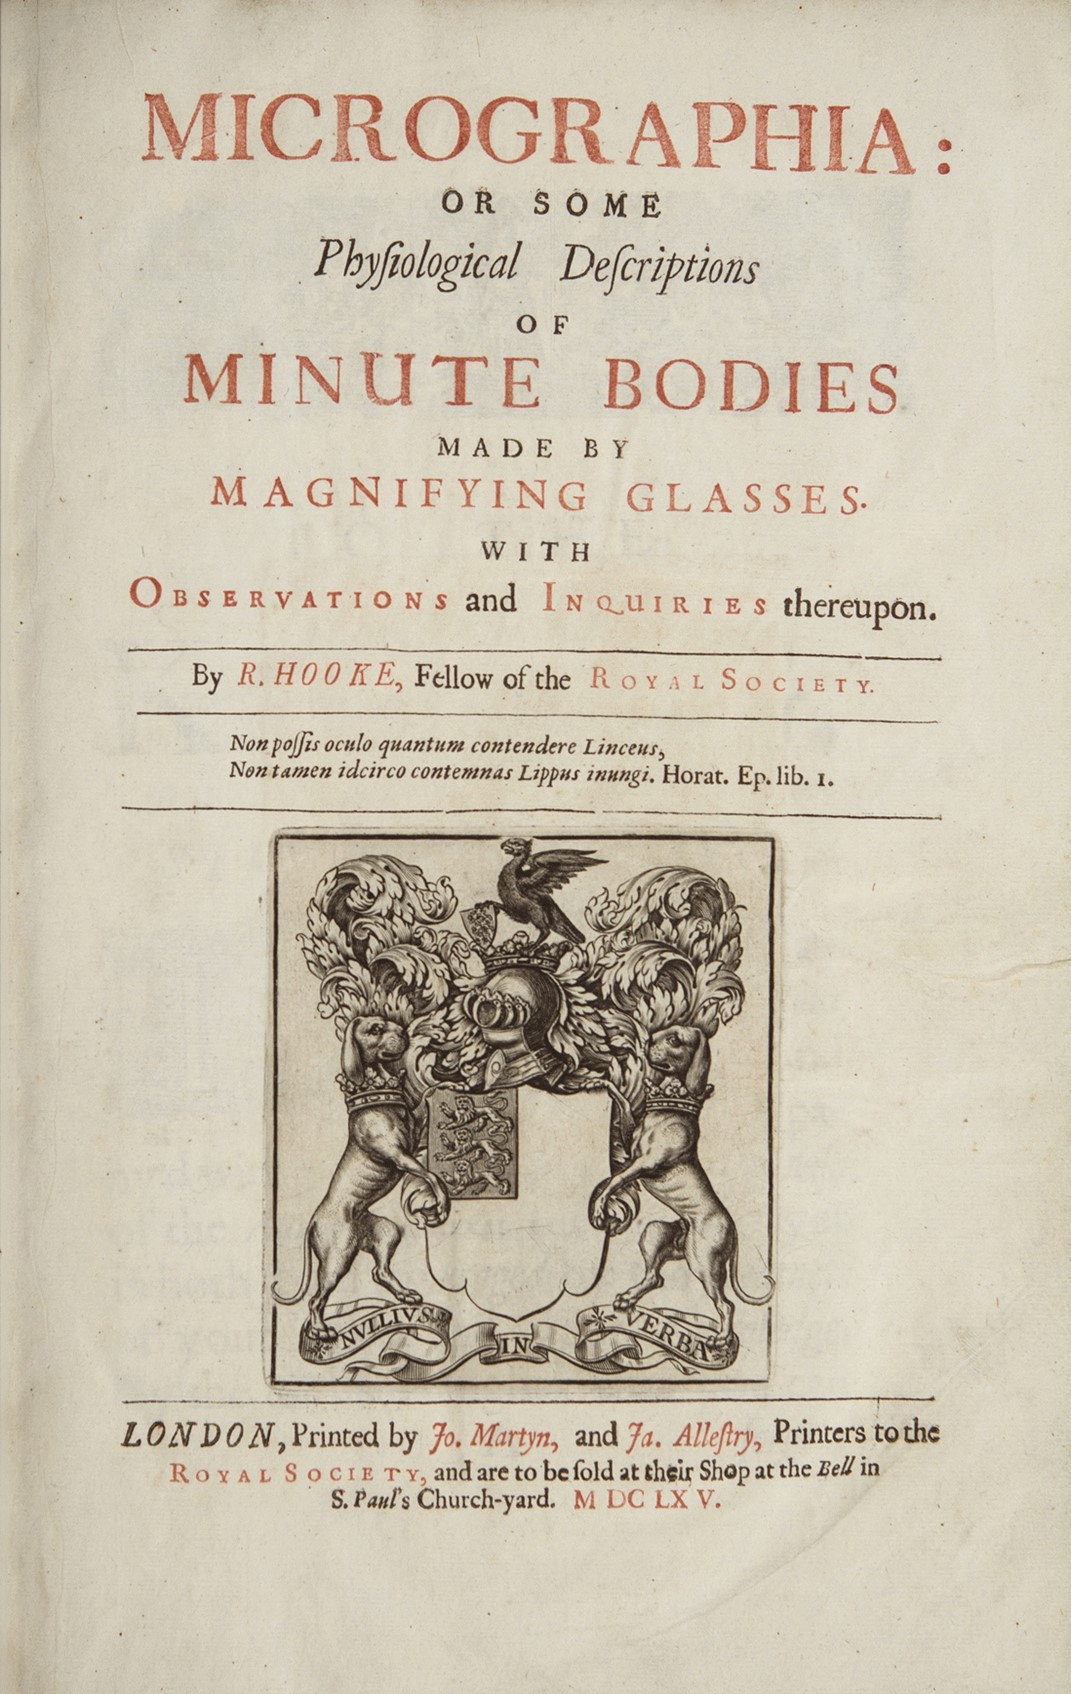 Robert Hooke's 1665 book